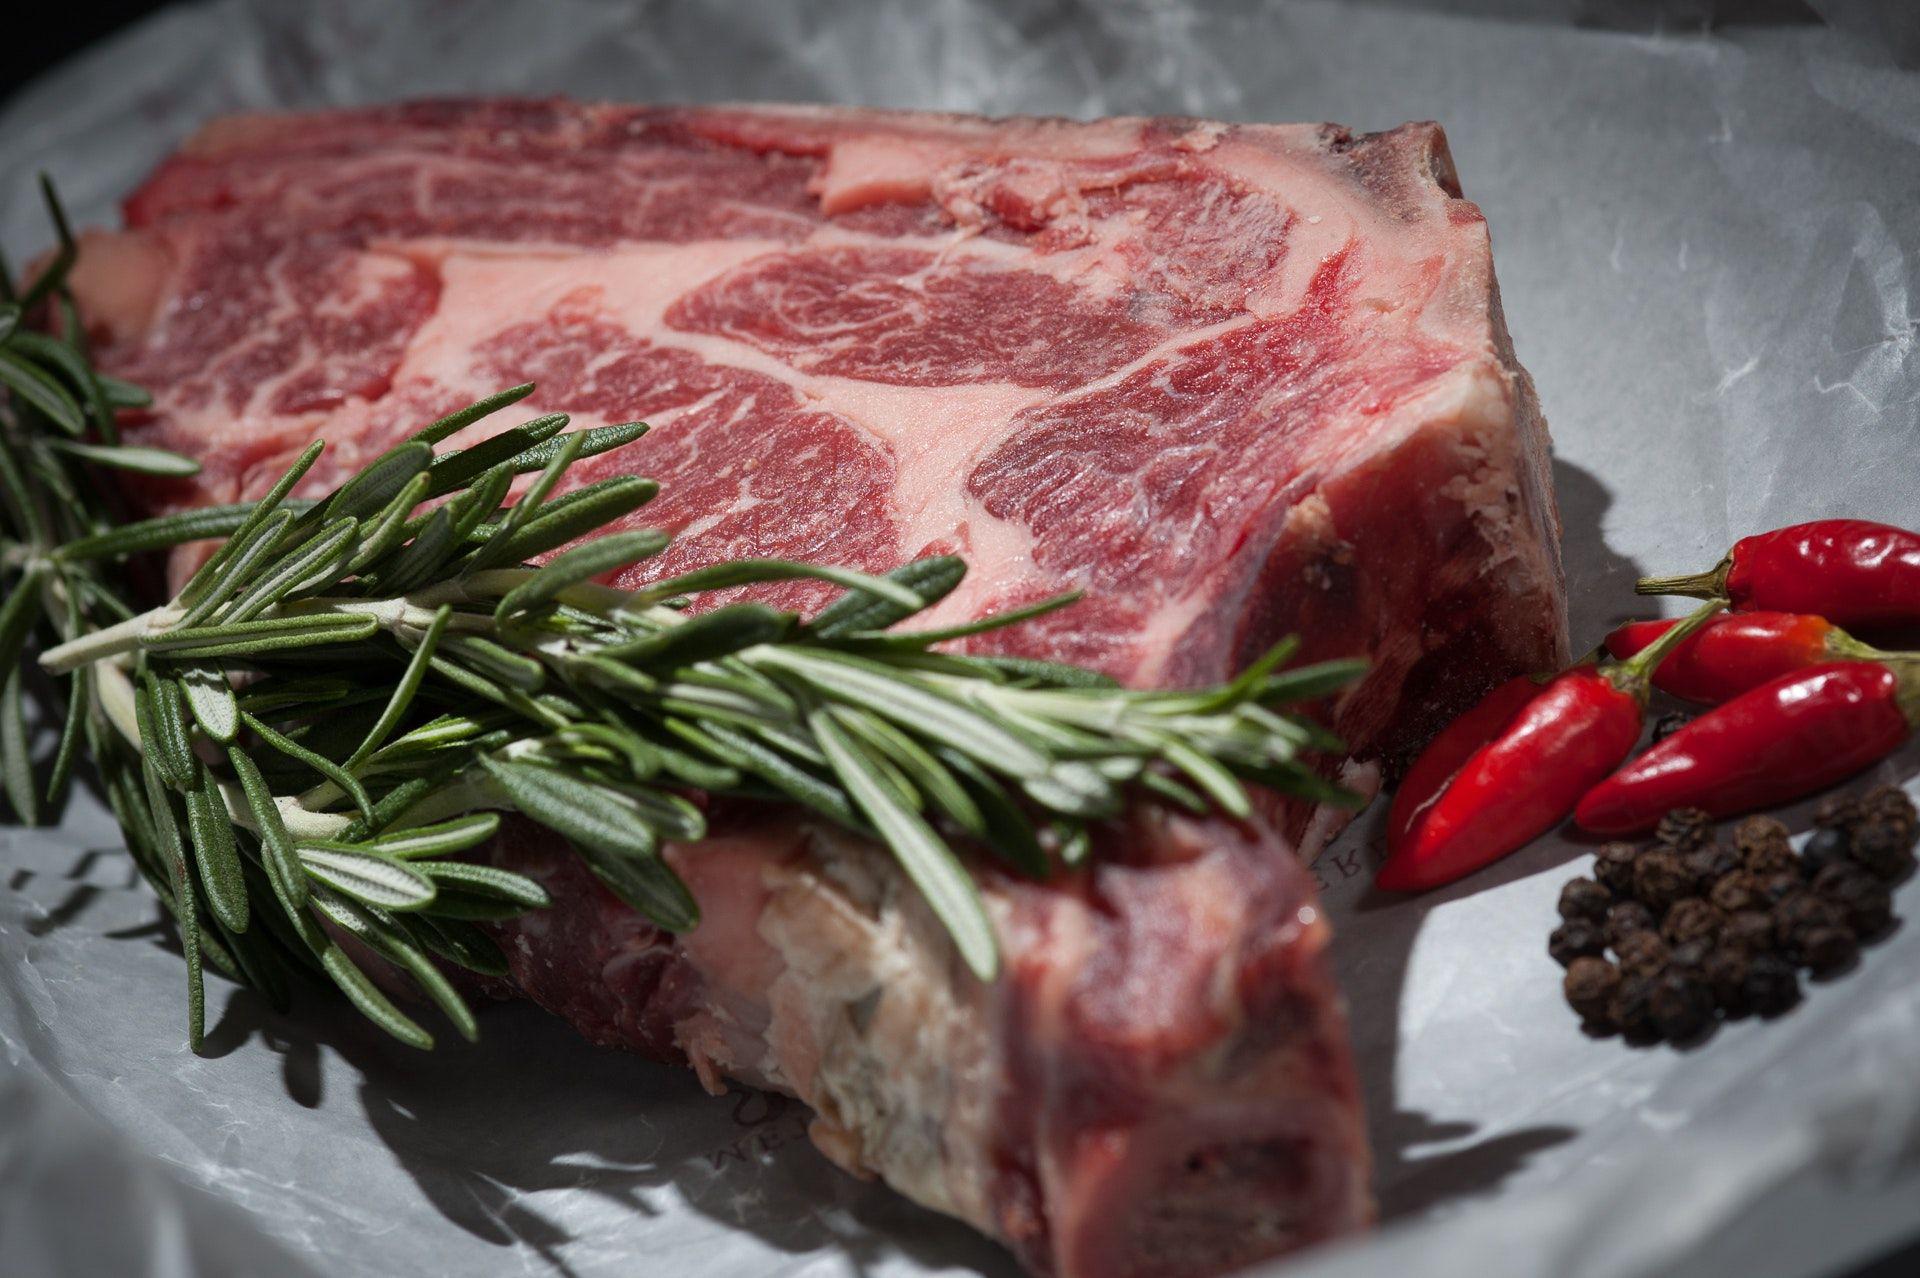 Buscan abrir nuevos mercados para la carne santiaguentildea en Pariacutes